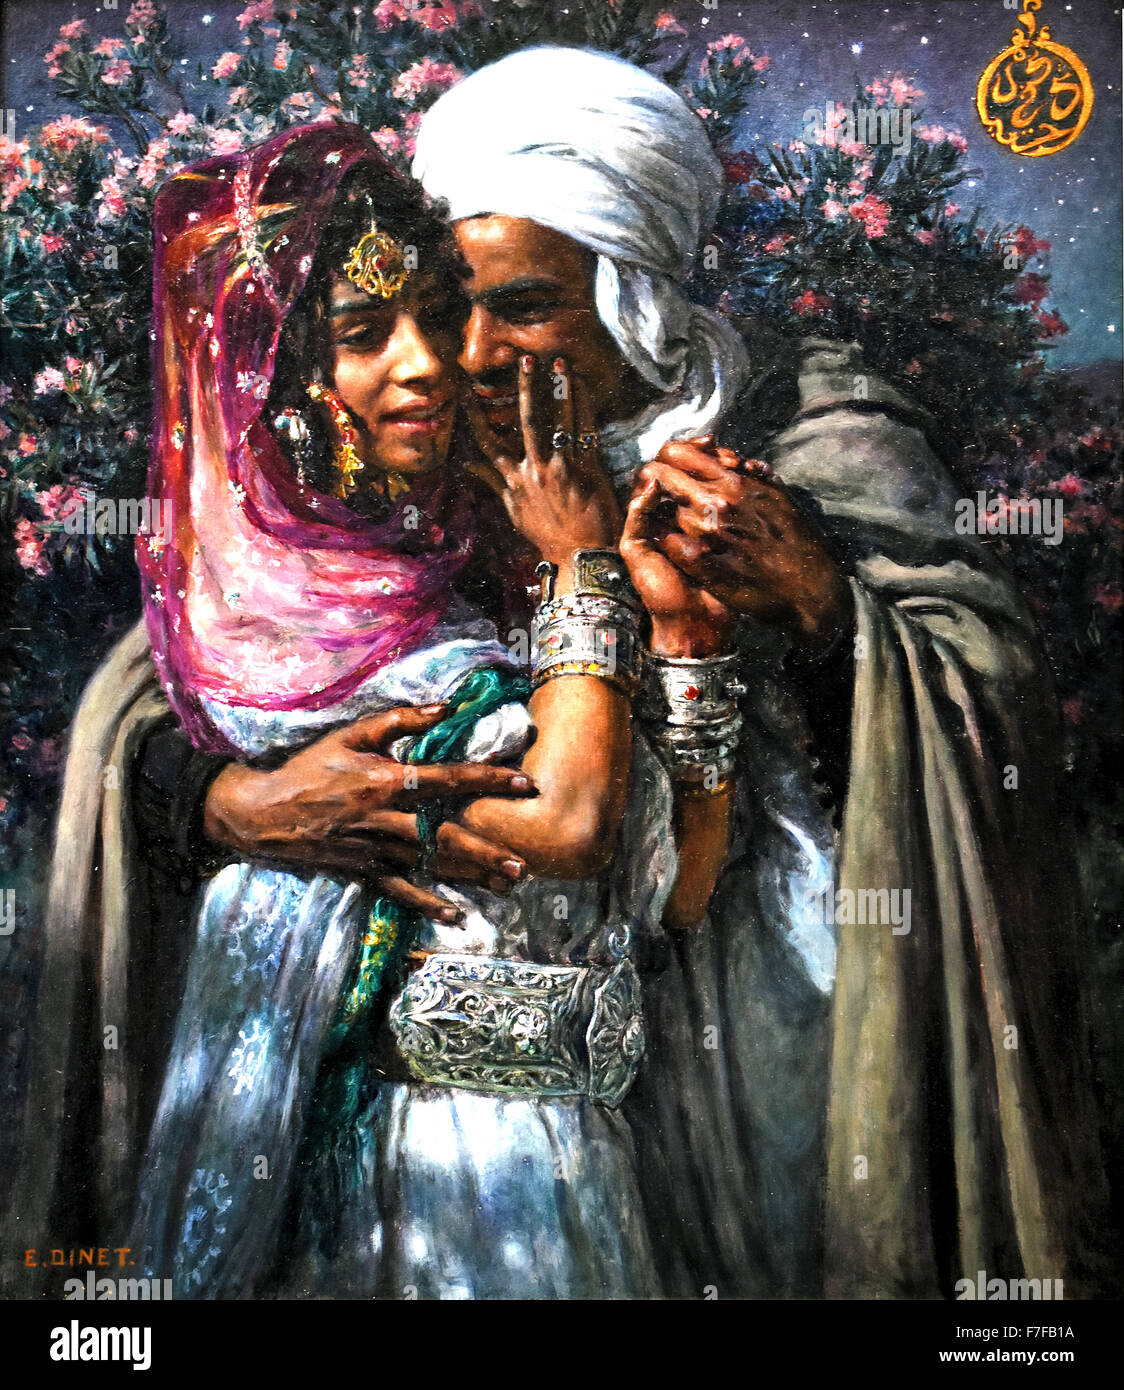 Sklavin der Liebe und Licht Auge: Abd el-Ain Ghram und Nouriel Arabisch Legende 1900 Etienne Dinet 1861-1929 Frankreich Französisch Stockfoto